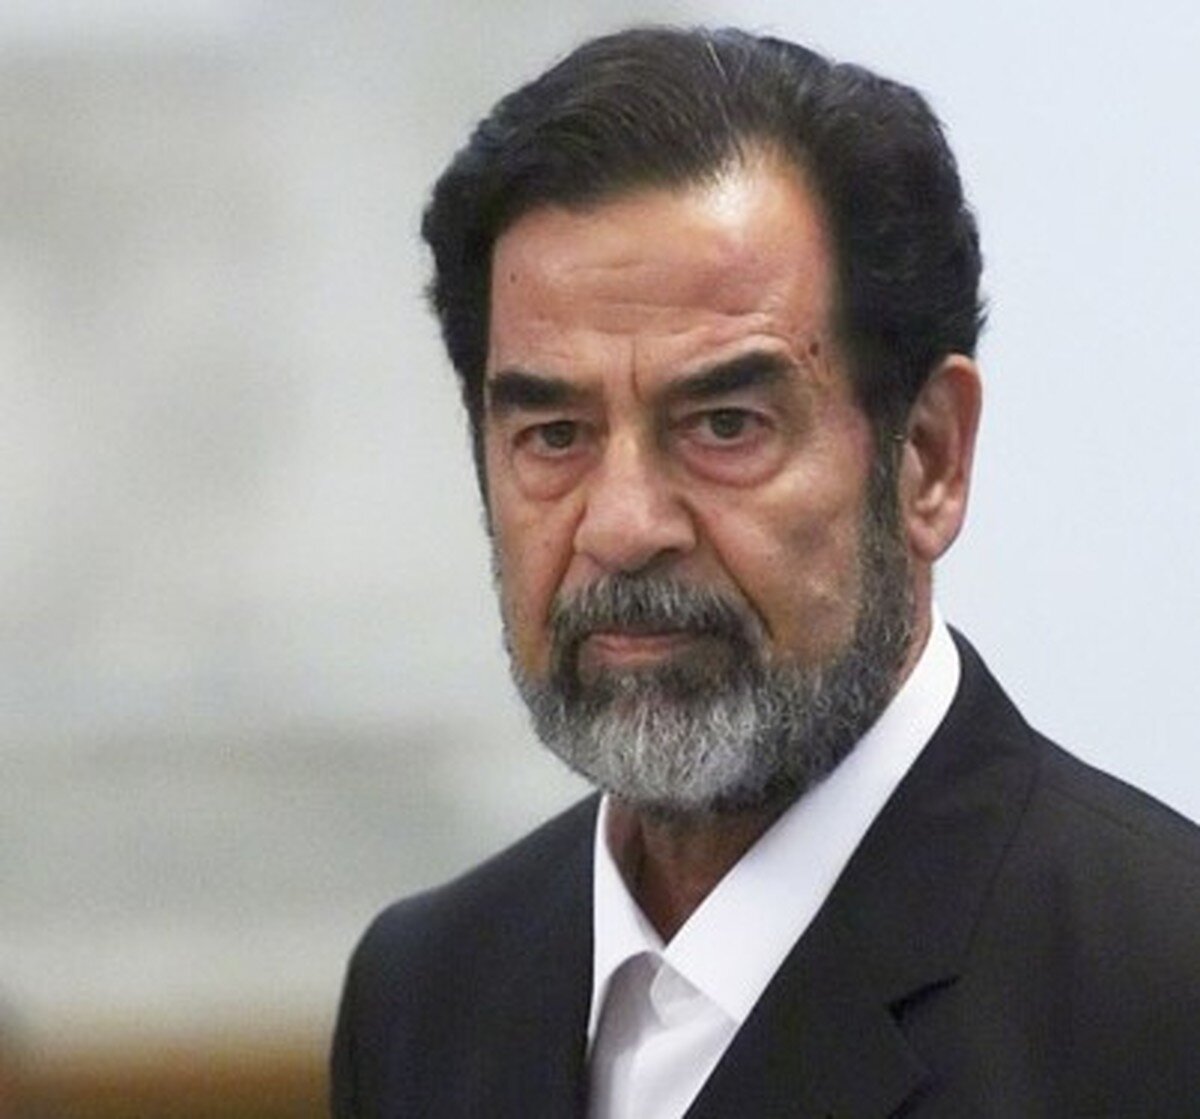 خاطرات معشوقه زیبای صدام حسین که اسیر شهوت های دیکتاتور عراق شد + عکس